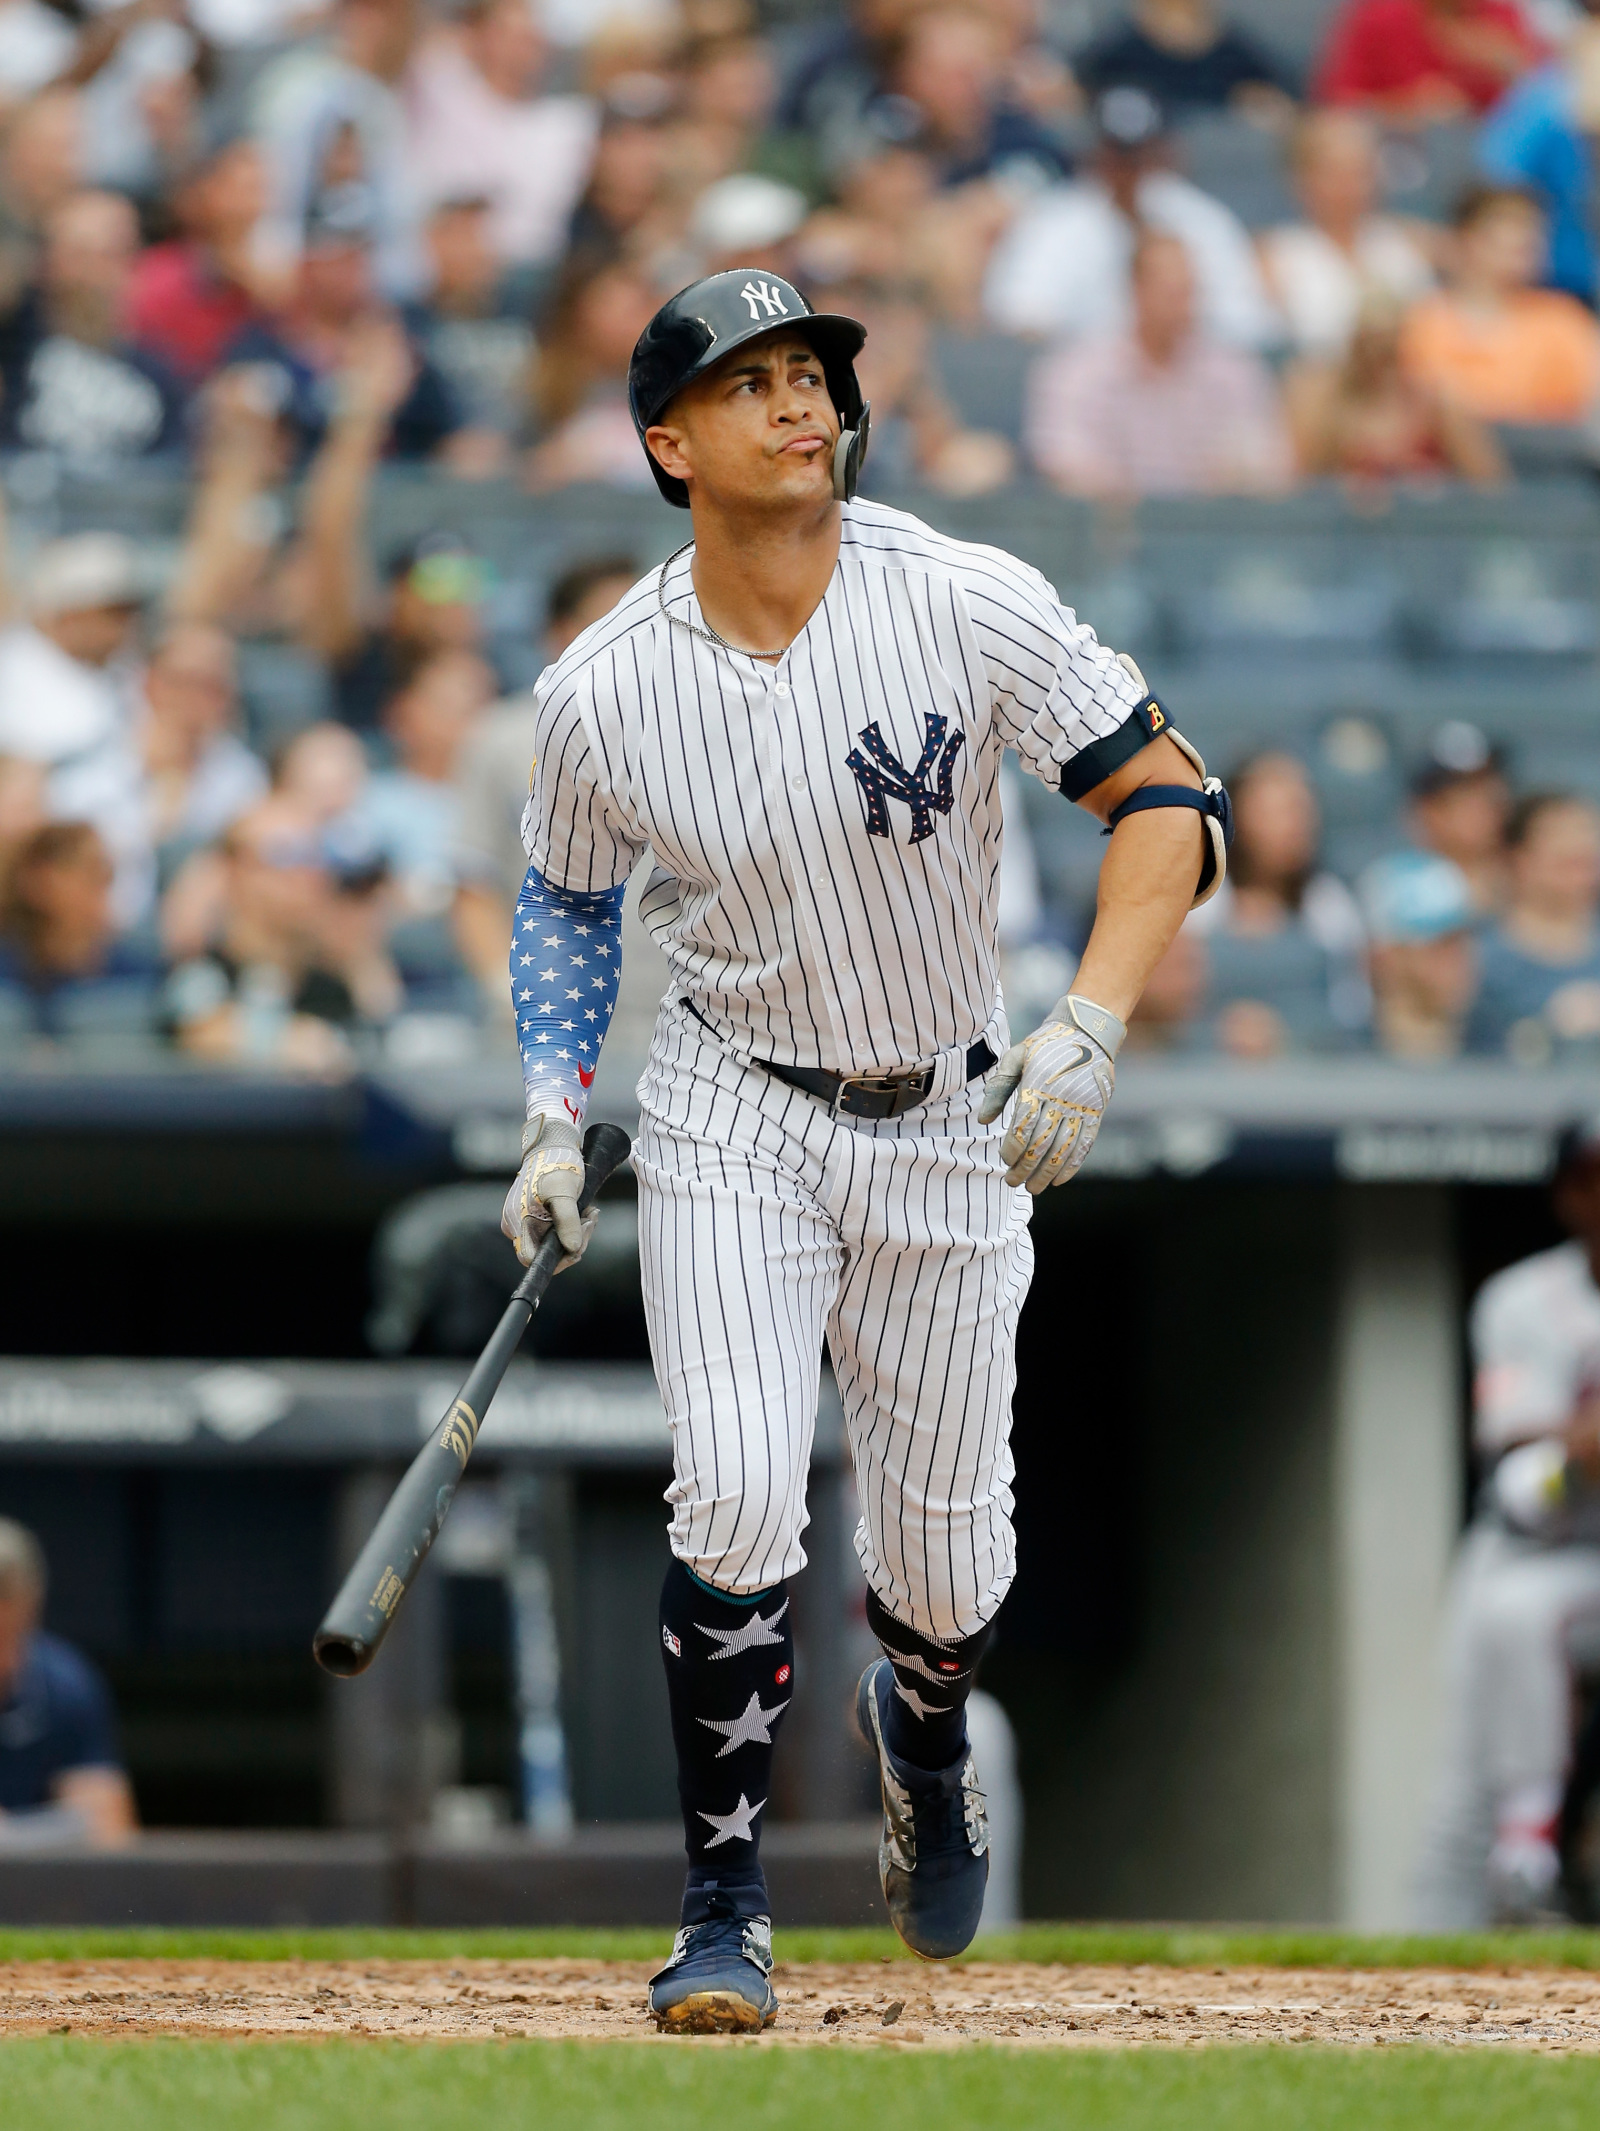 New York Yankees legend Tino Martinez returns to baseball 